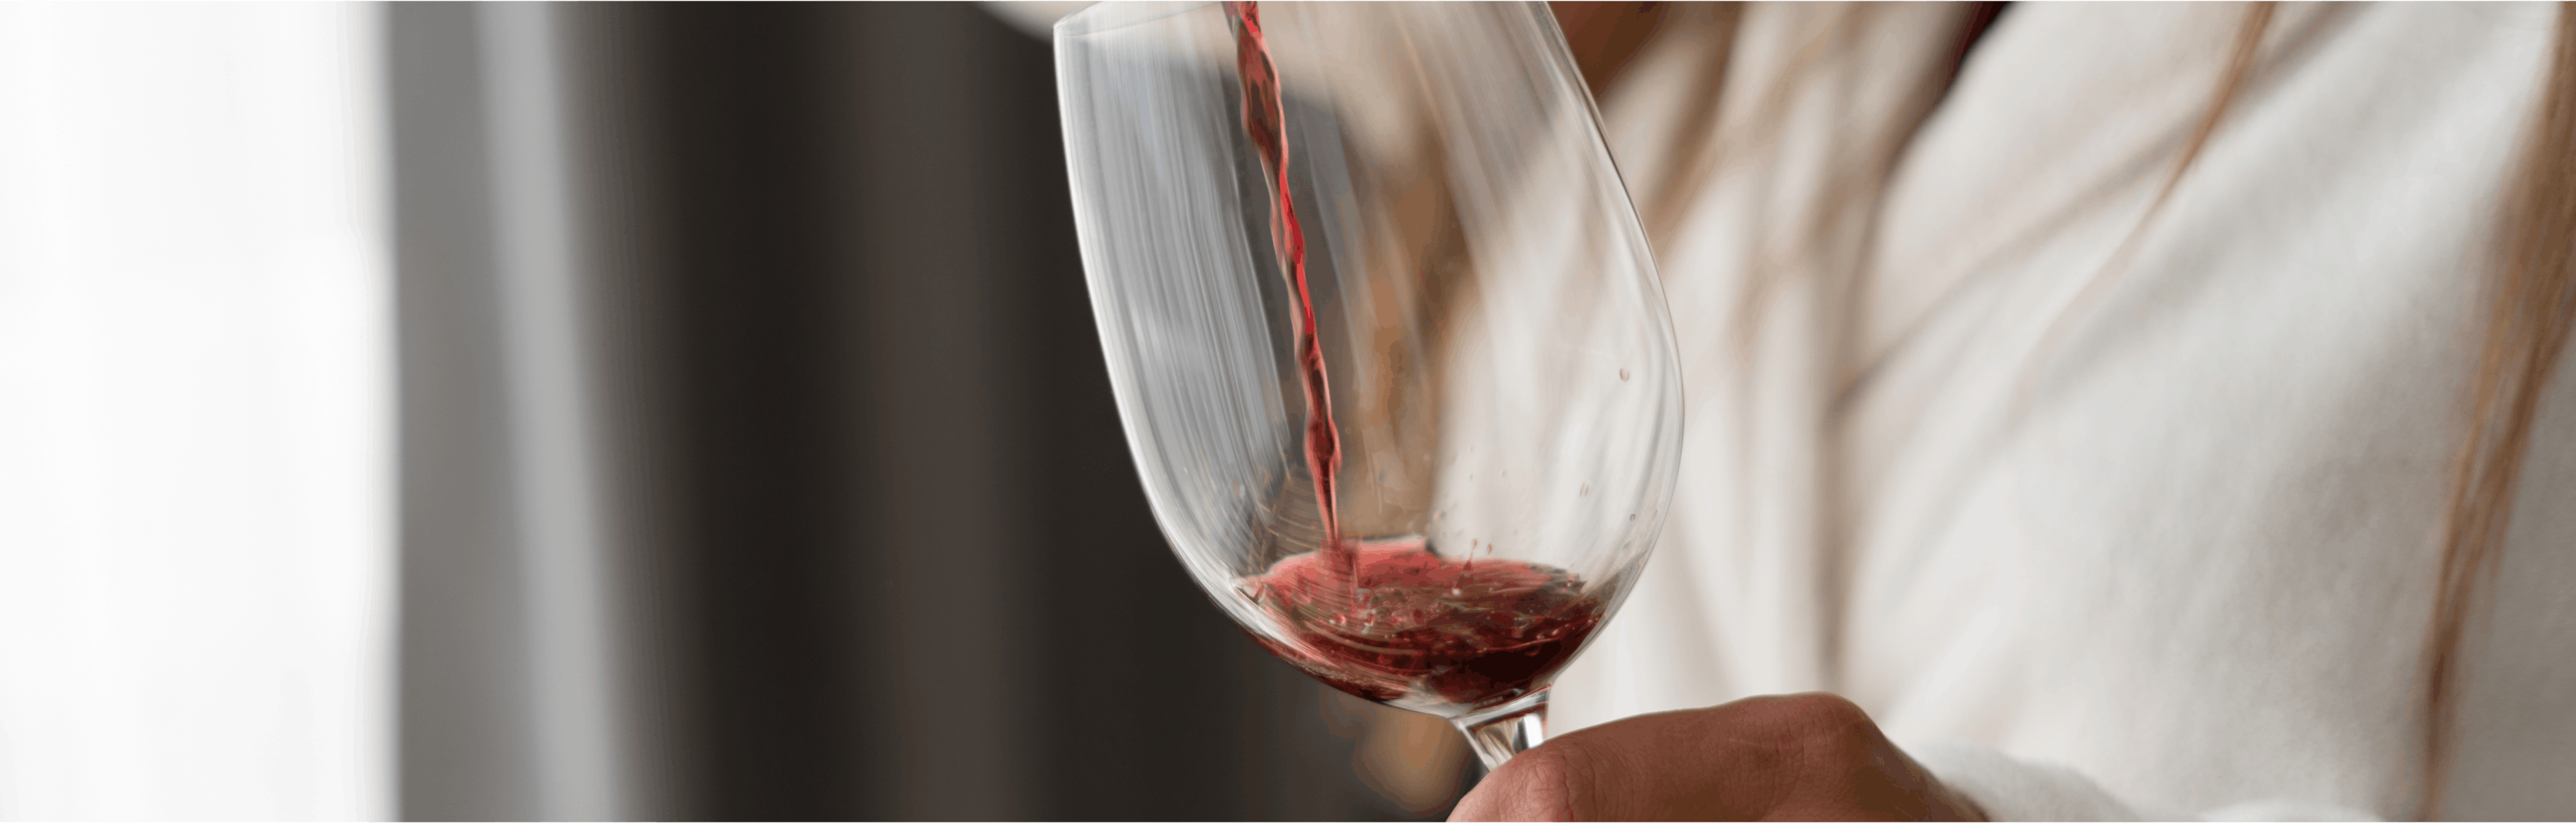 Histaminunverträglichkeit – wenn Wein & Co. Beschwerden machen